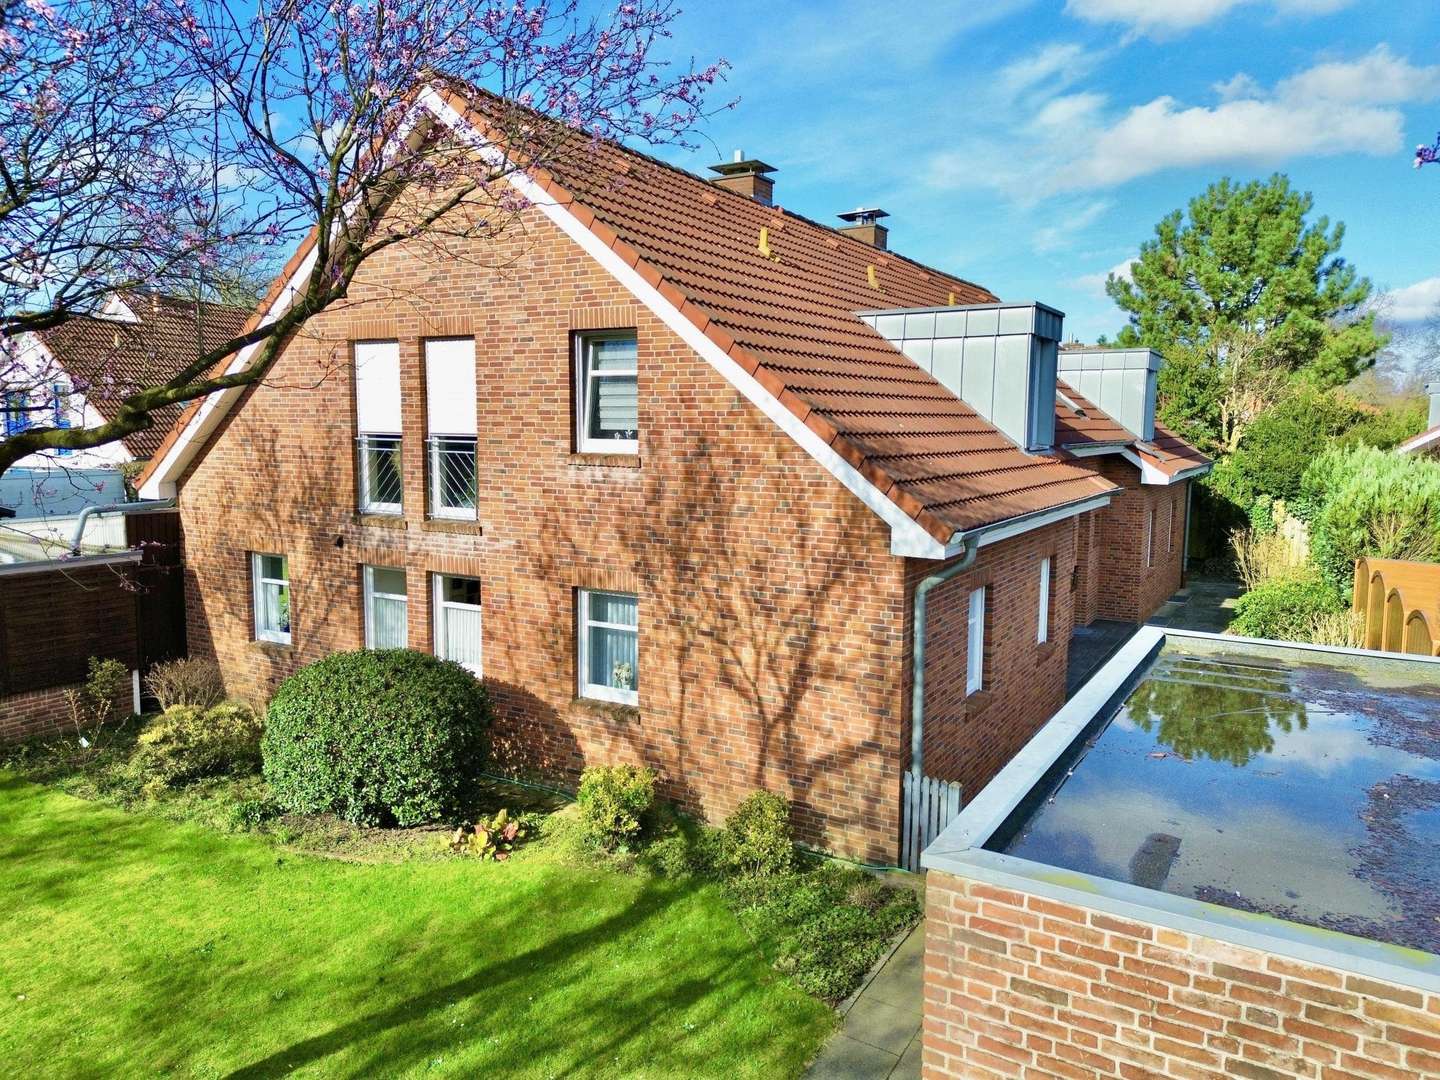 null - Dachgeschosswohnung in 48531 Nordhorn mit 64m² kaufen